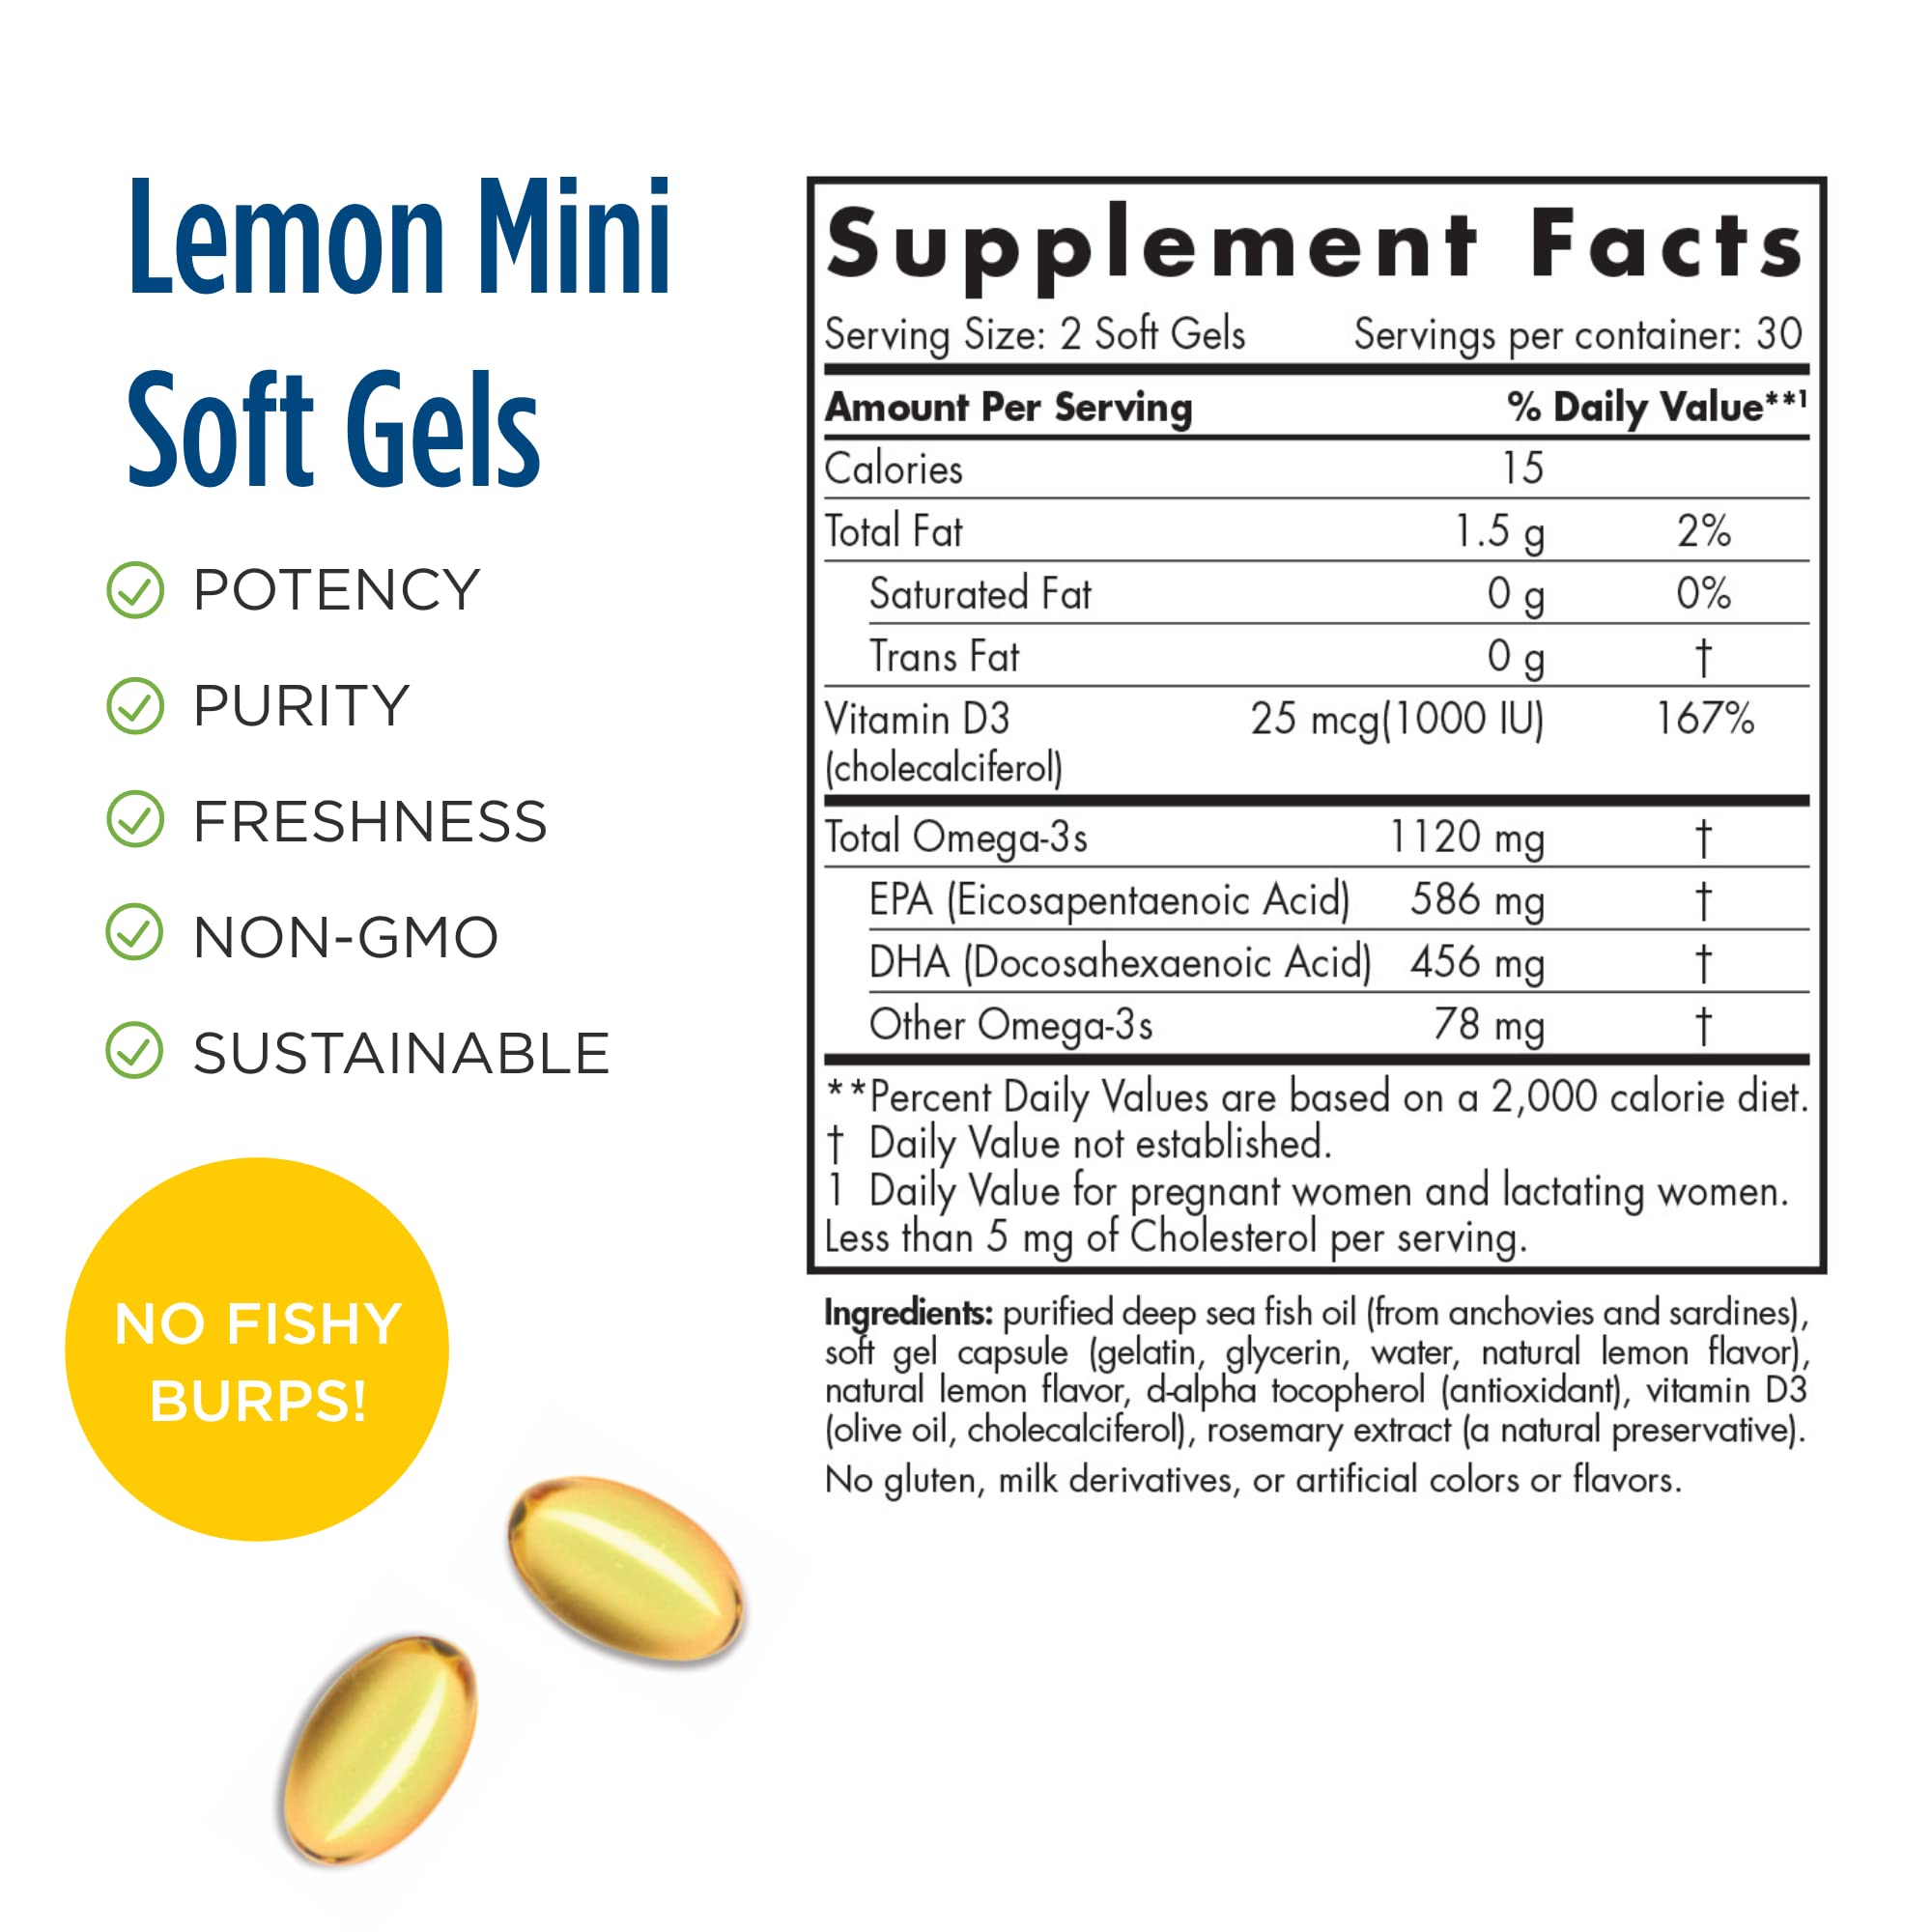 Nordic Naturals Postnatal Omega-3, Lemon - 1120 Total Omega-3 + 1000 IU Vitamin D3 - 60 Soft Gels - Formulated for New Moms; Supports Optimal Wellness, Positive Mood, Healthy Metabolism - 30 Servings